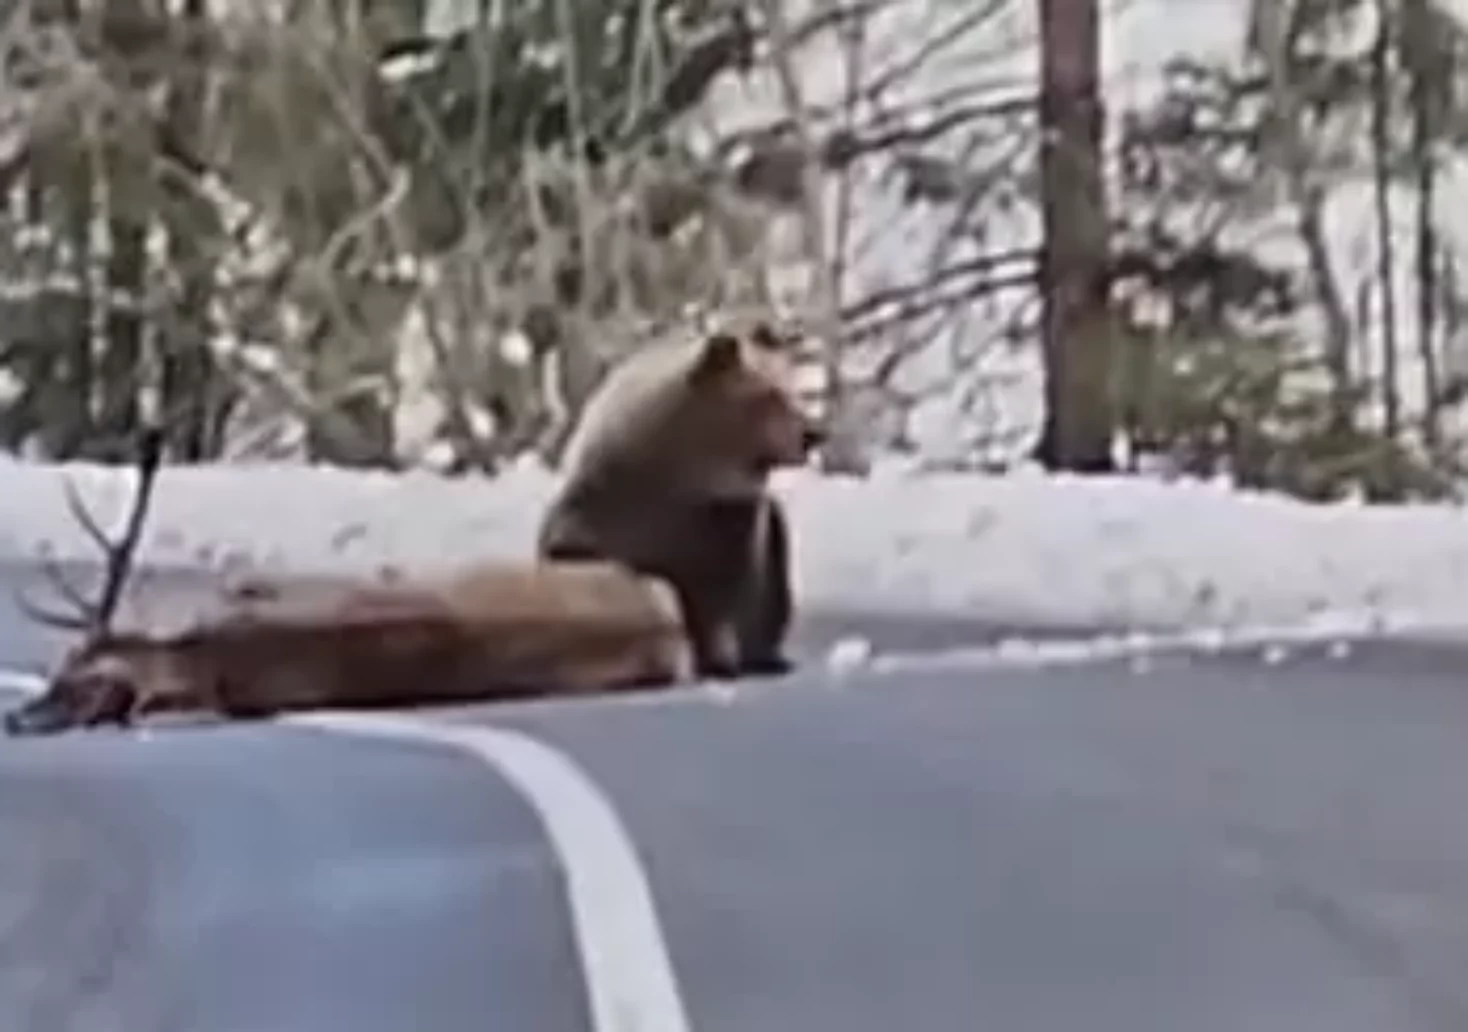 Foto in Beitrag von 5min.at: Zu sehen ist ein Bär, der einen Hirsch reißt.